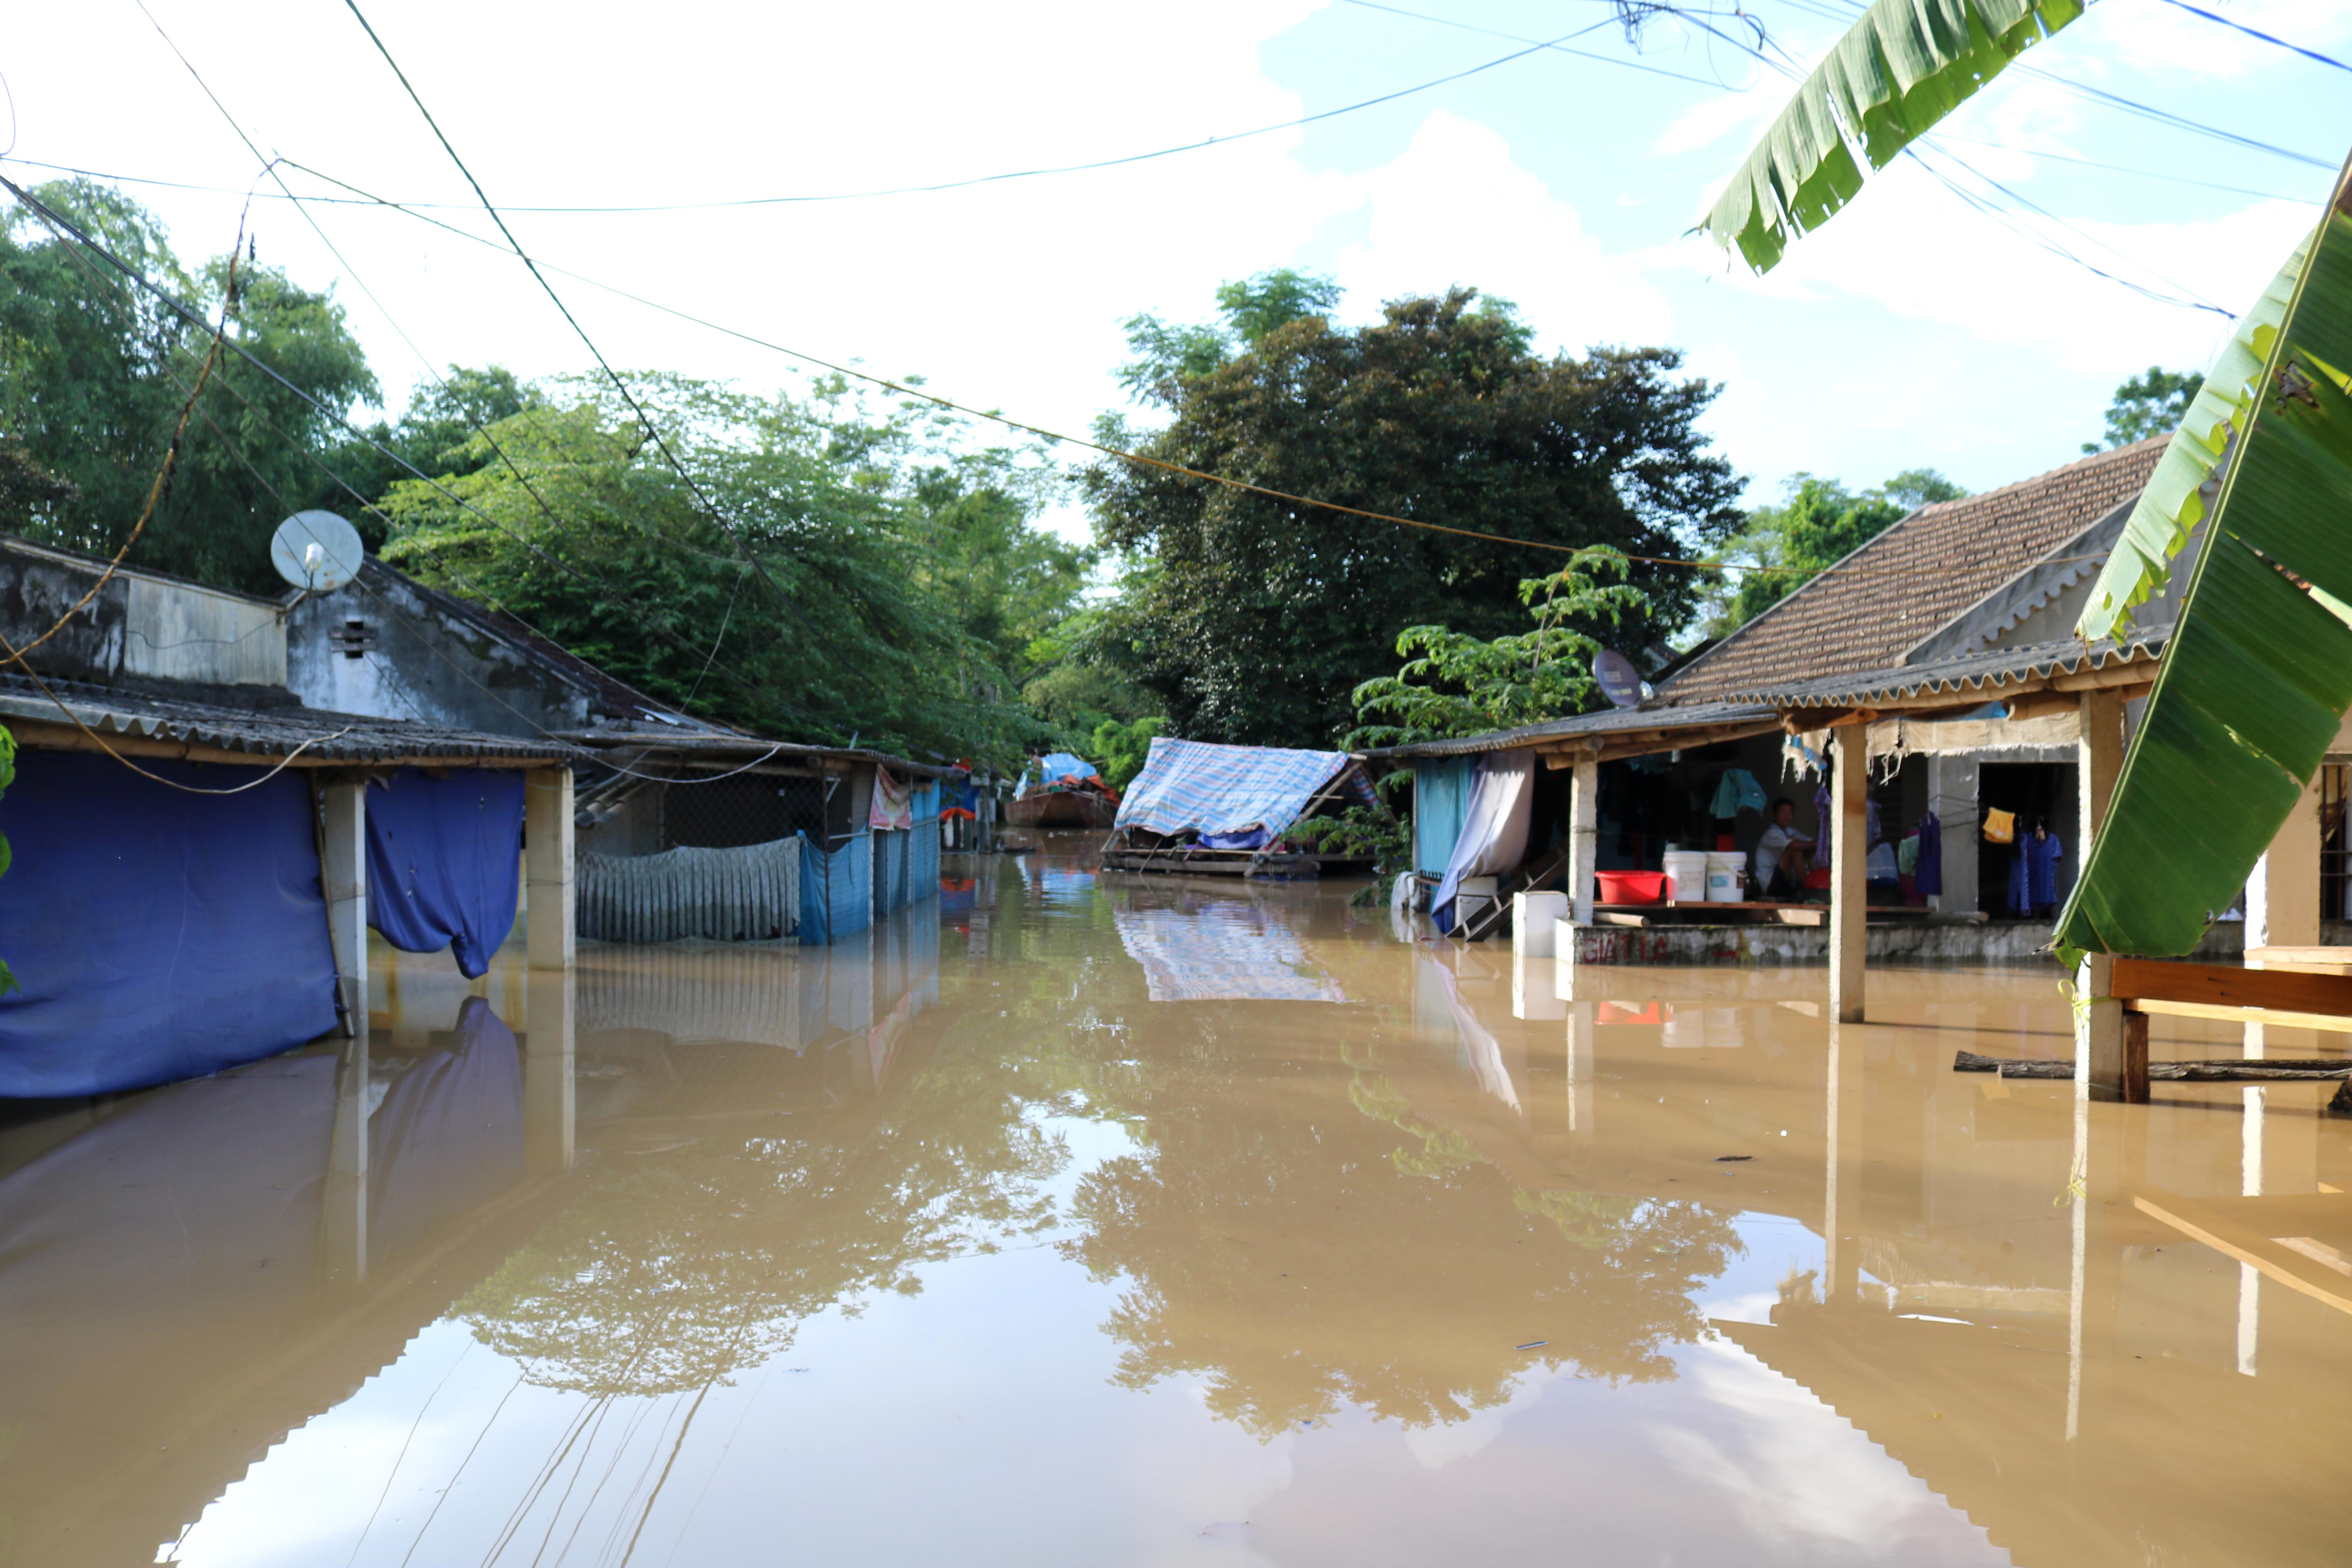 Đã 3 ngày qua, gần 120 hộ dân khối 1 và vùng lân cận, thị trấn Đô Lương đã bị ngập sâu trong nước, có nơi trên 1,5m. Ảnh: Huy Thư